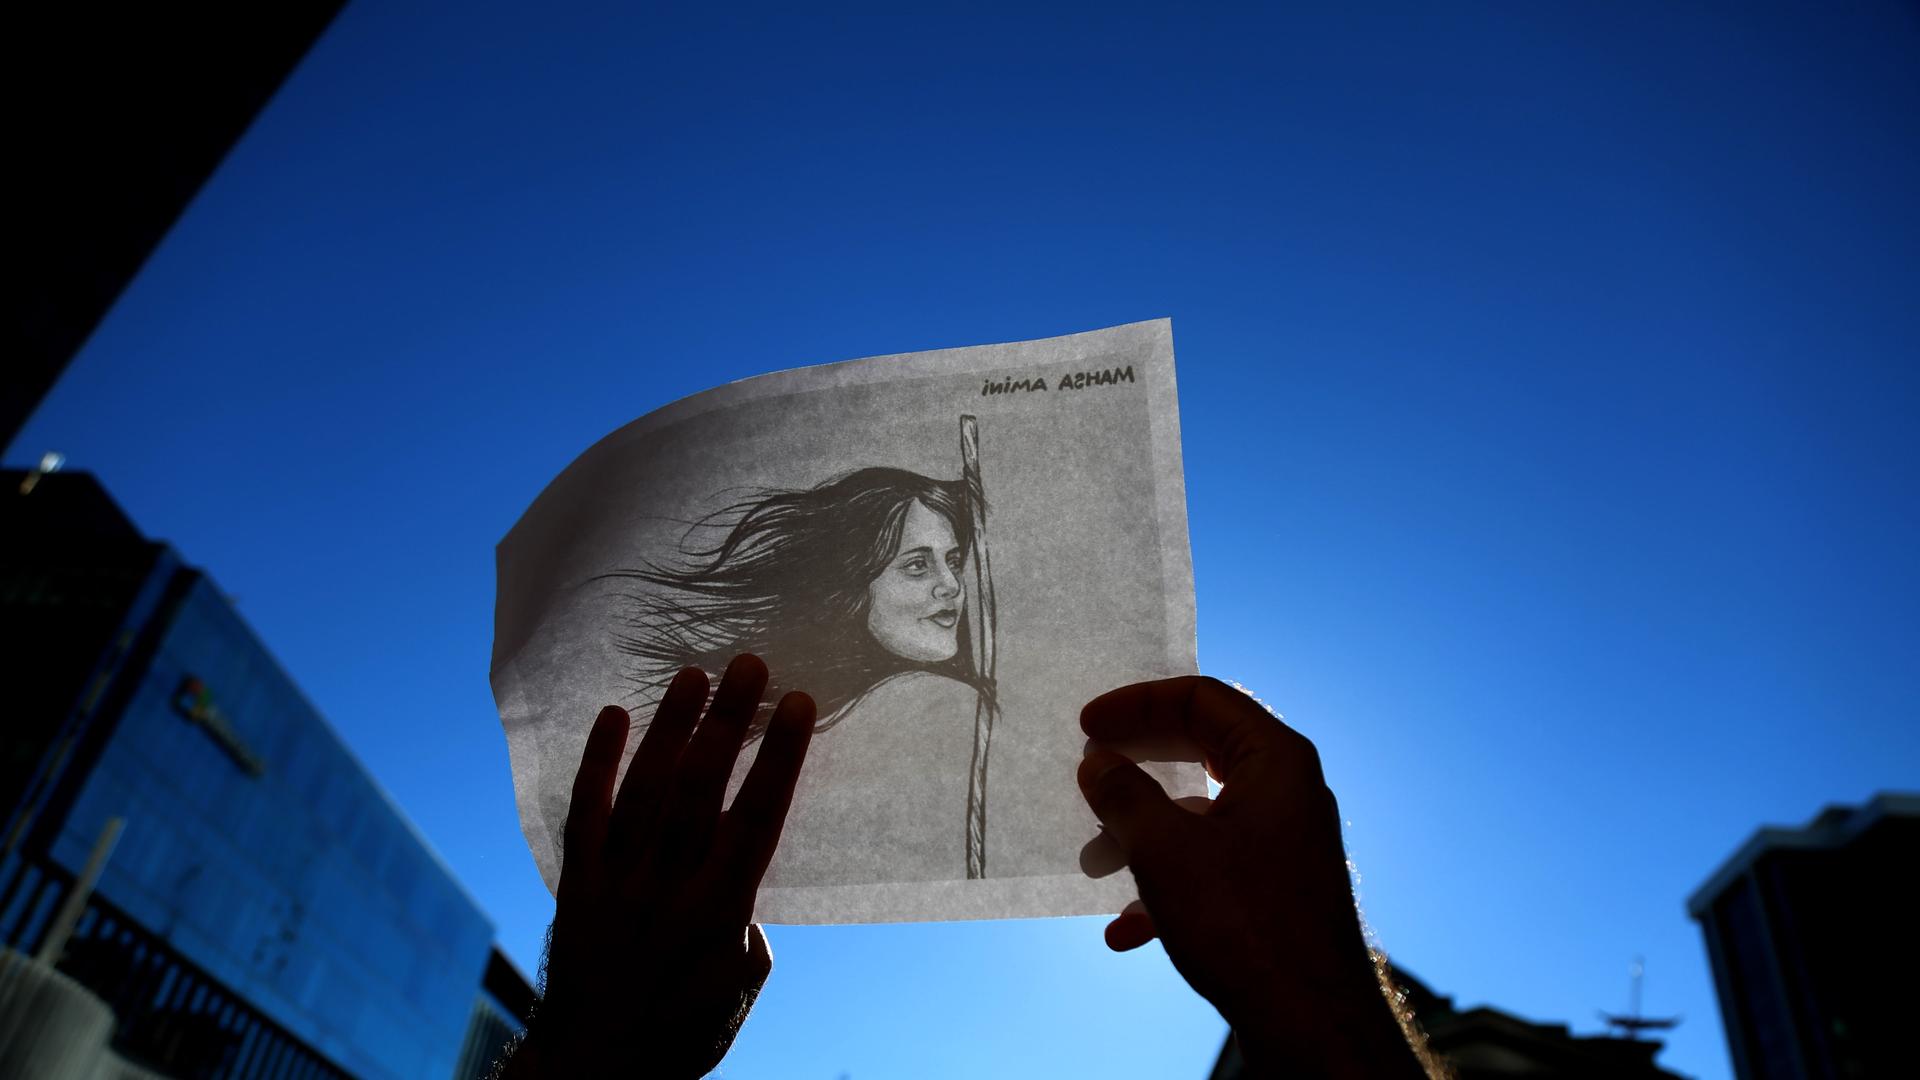 Eine Person hält eine weiße Fahne in die Luft auf der eine Zeichnung von Mahsa Amini zu sehen ist.